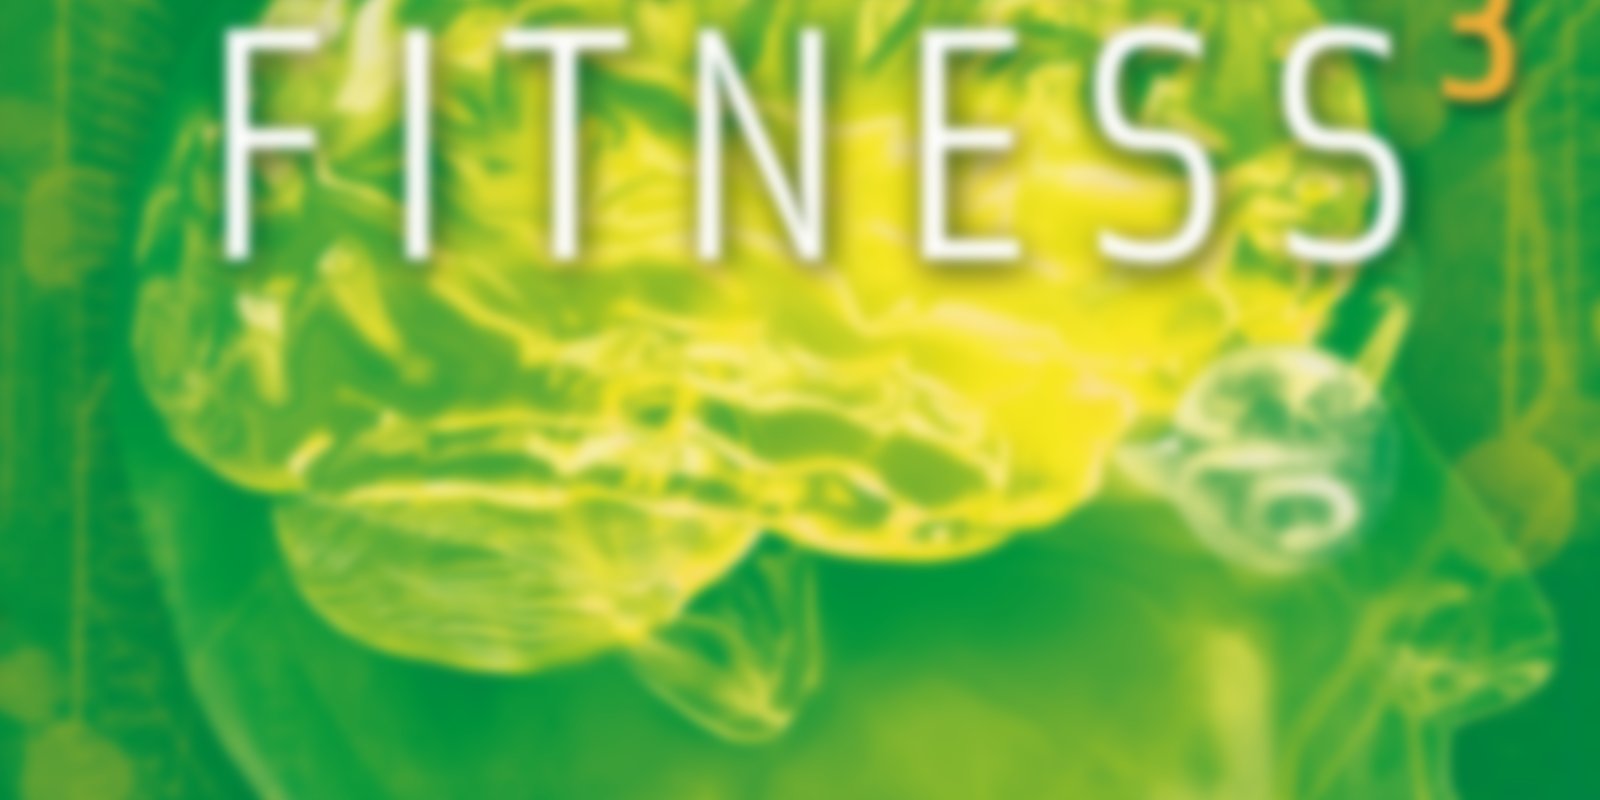 Brain Fitness 3 - Grenzen überschreiten